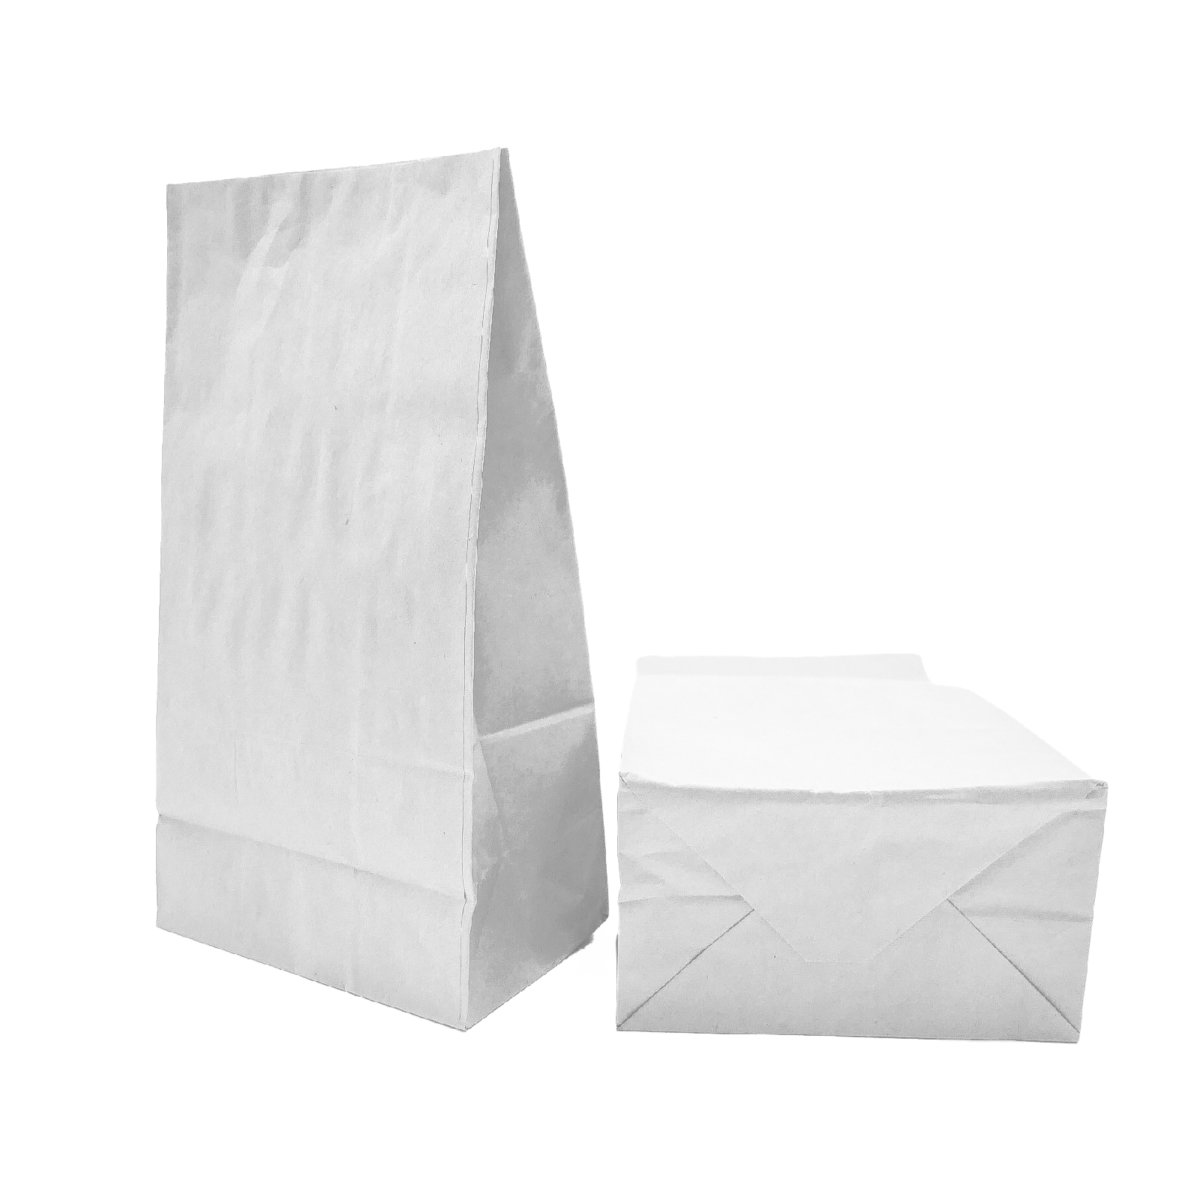 sac SOS personnalisable - Wellembal emballage alimentaire écologique à personnaliser avec votre logo